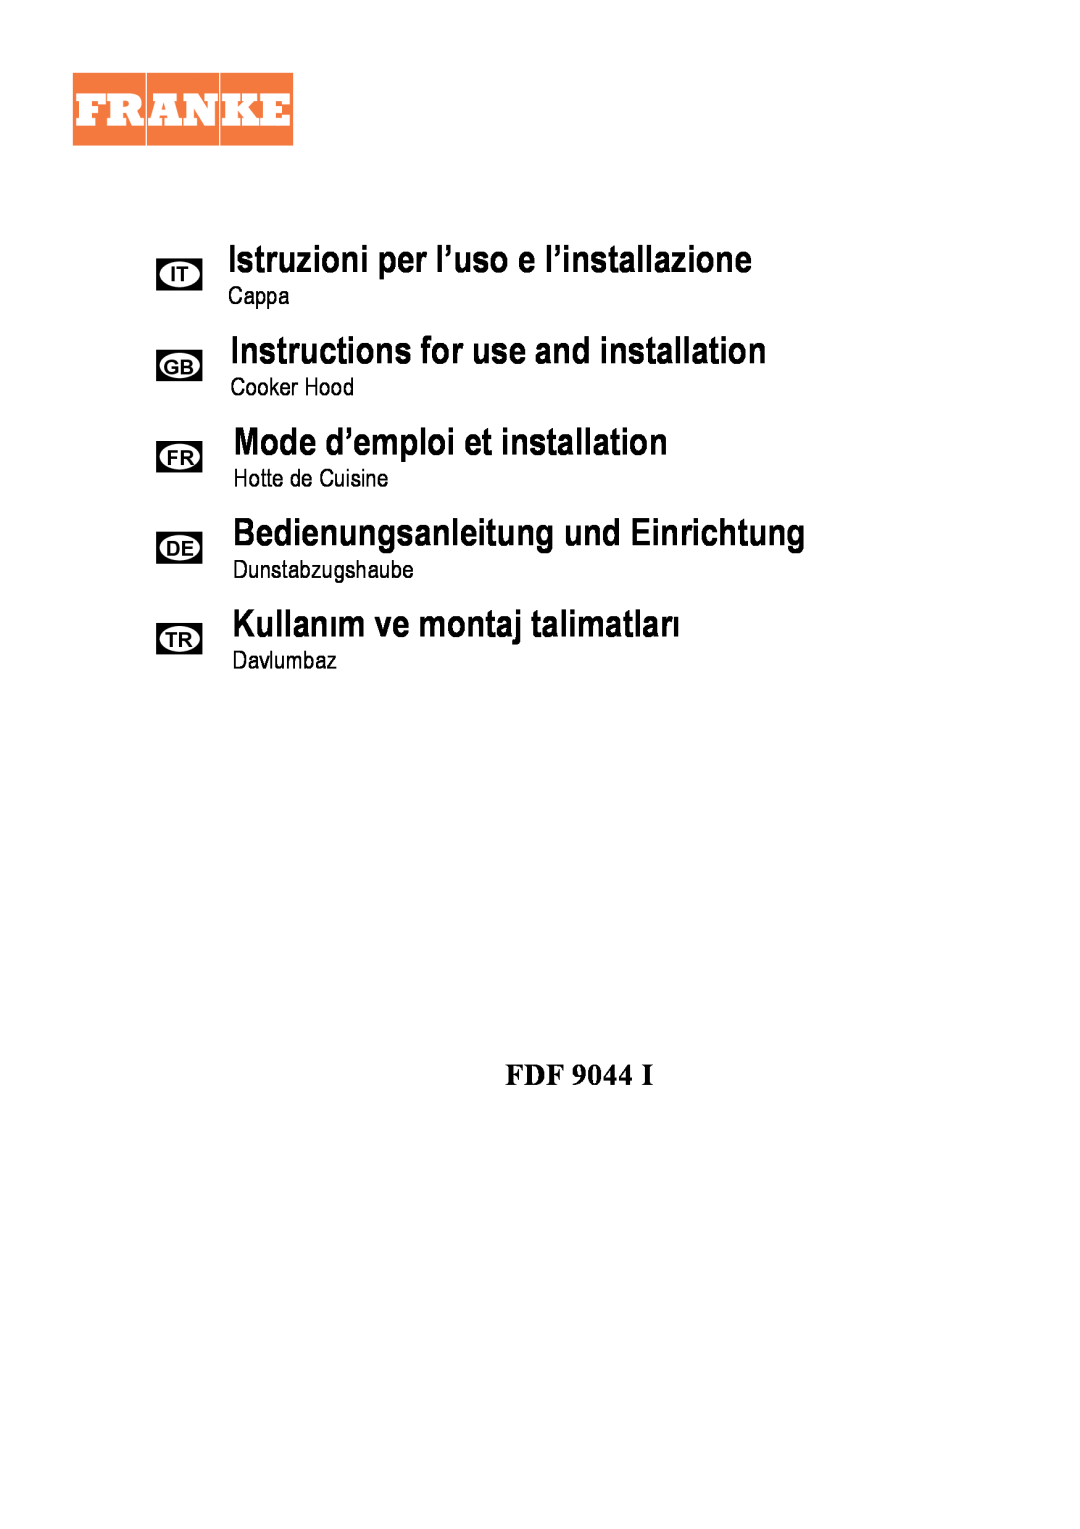 Franke Consumer Products FDF 9044 I manual Istruzioniperl’usoel’installazione, Instructionsforuseandinstallation, Cappa 